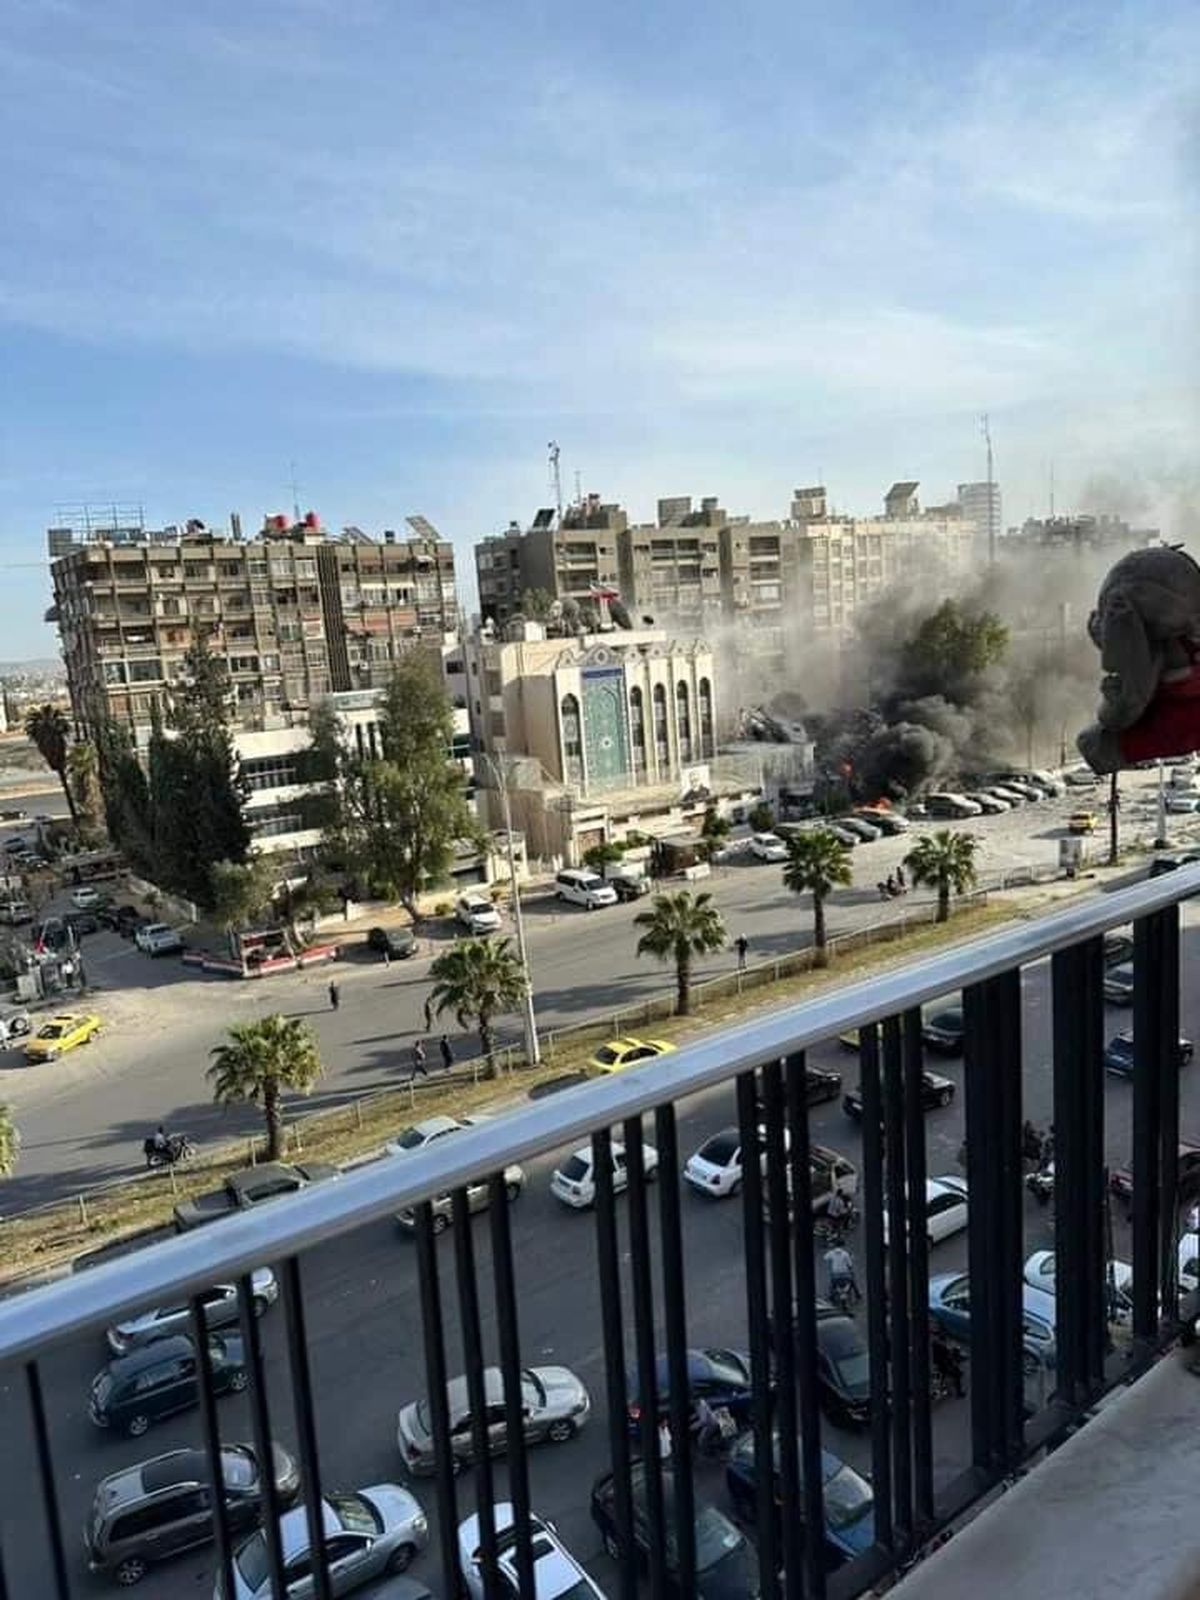 حمله اسرائیل به سفارت ایران در دمشق/ تایید شهادت ۷ نفر/ سردار زاهدی به شهادت رسید/ سفیر ایران در سلامت است